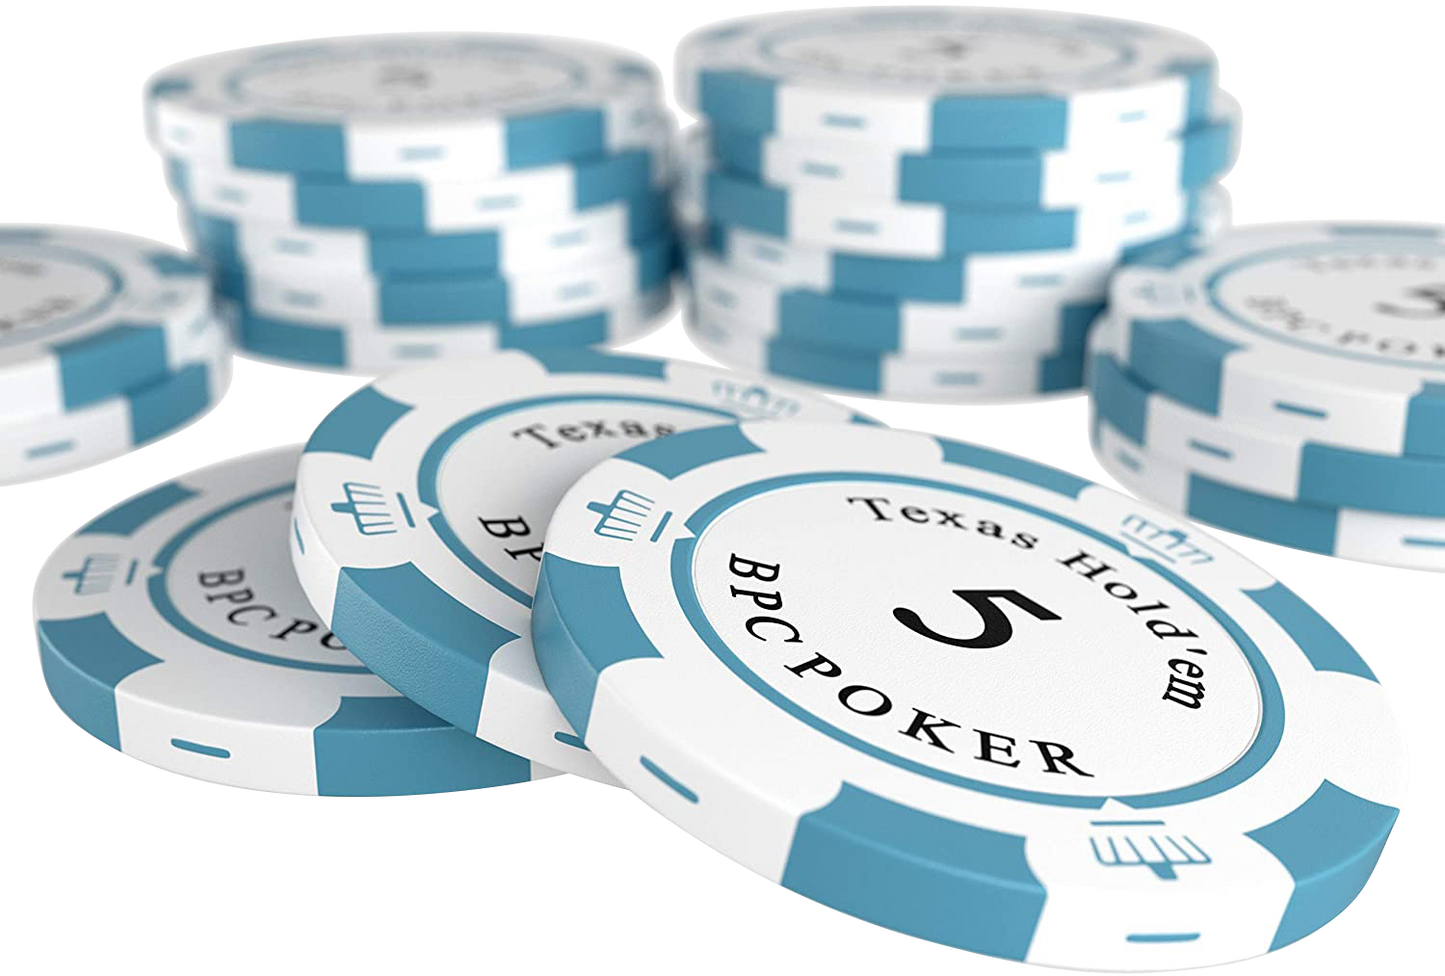 Maletín de poker con 300 fichas de poker de arcilla "Carmela" con valores